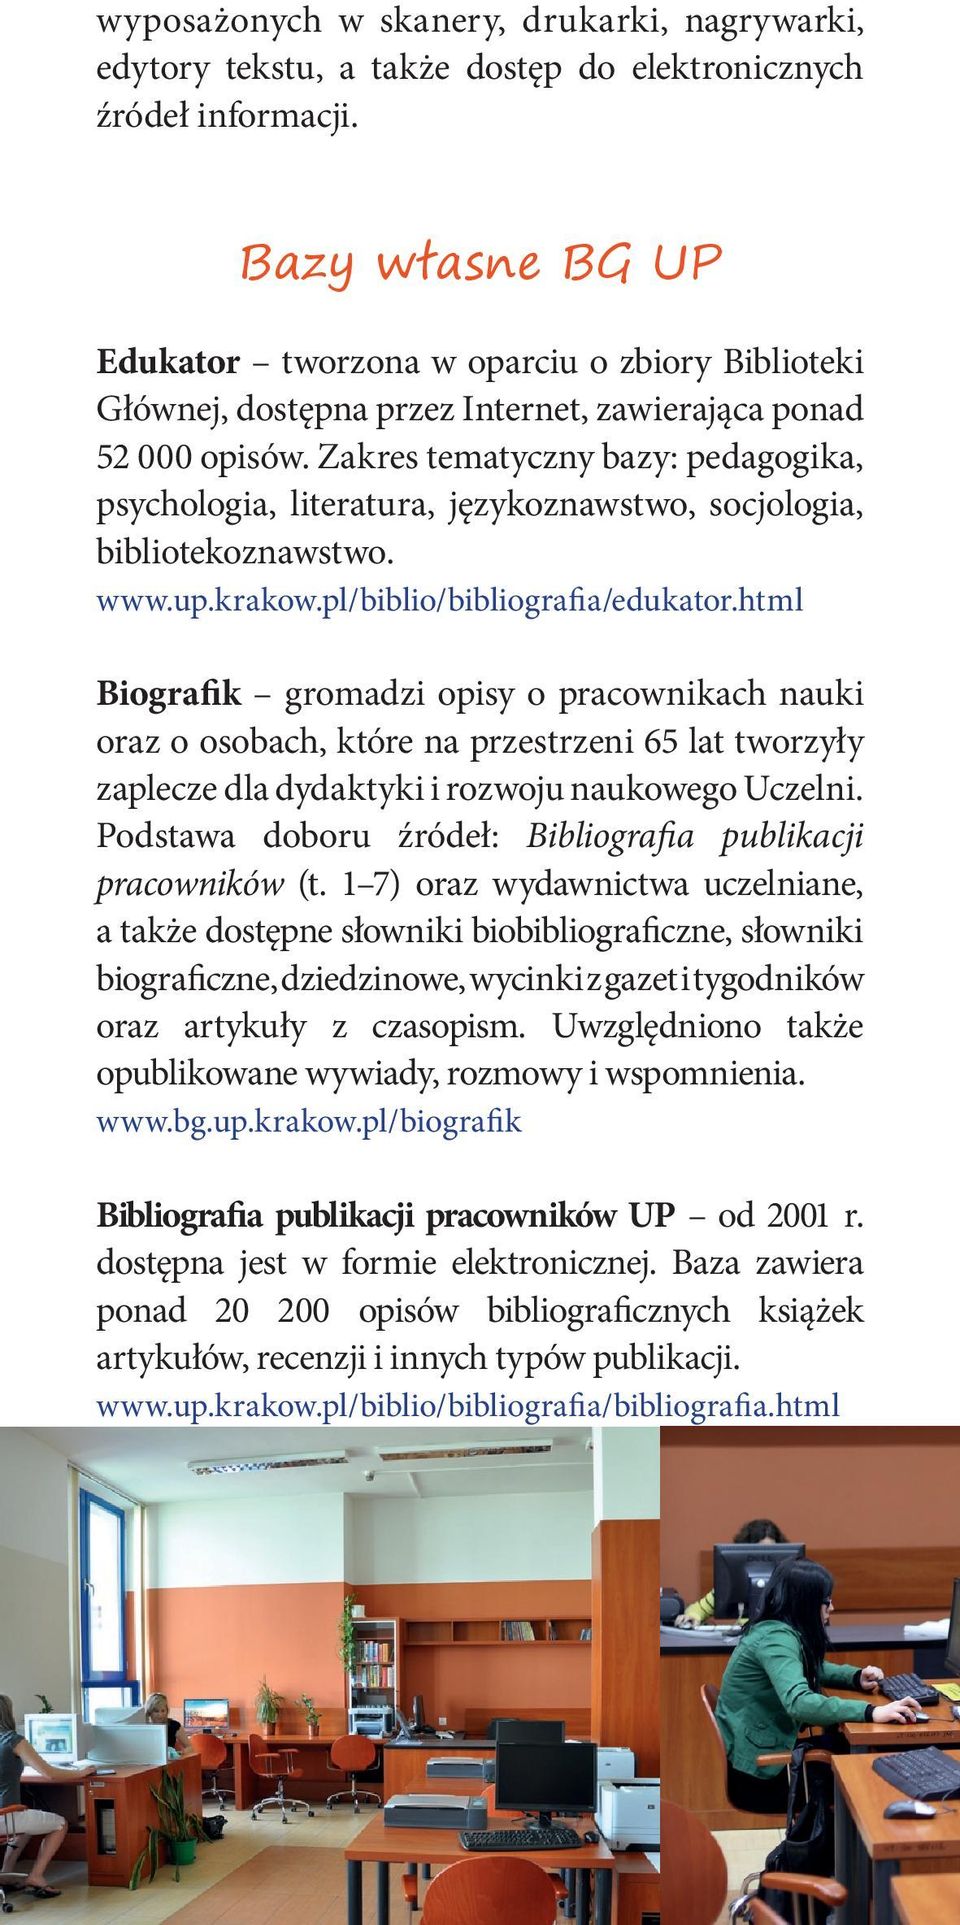 Zakres tematyczny bazy: pedagogika, psychologia, literatura, językoznawstwo, socjologia, bibliotekoznawstwo. www.up.krakow.pl/biblio/bibliografia/edukator.